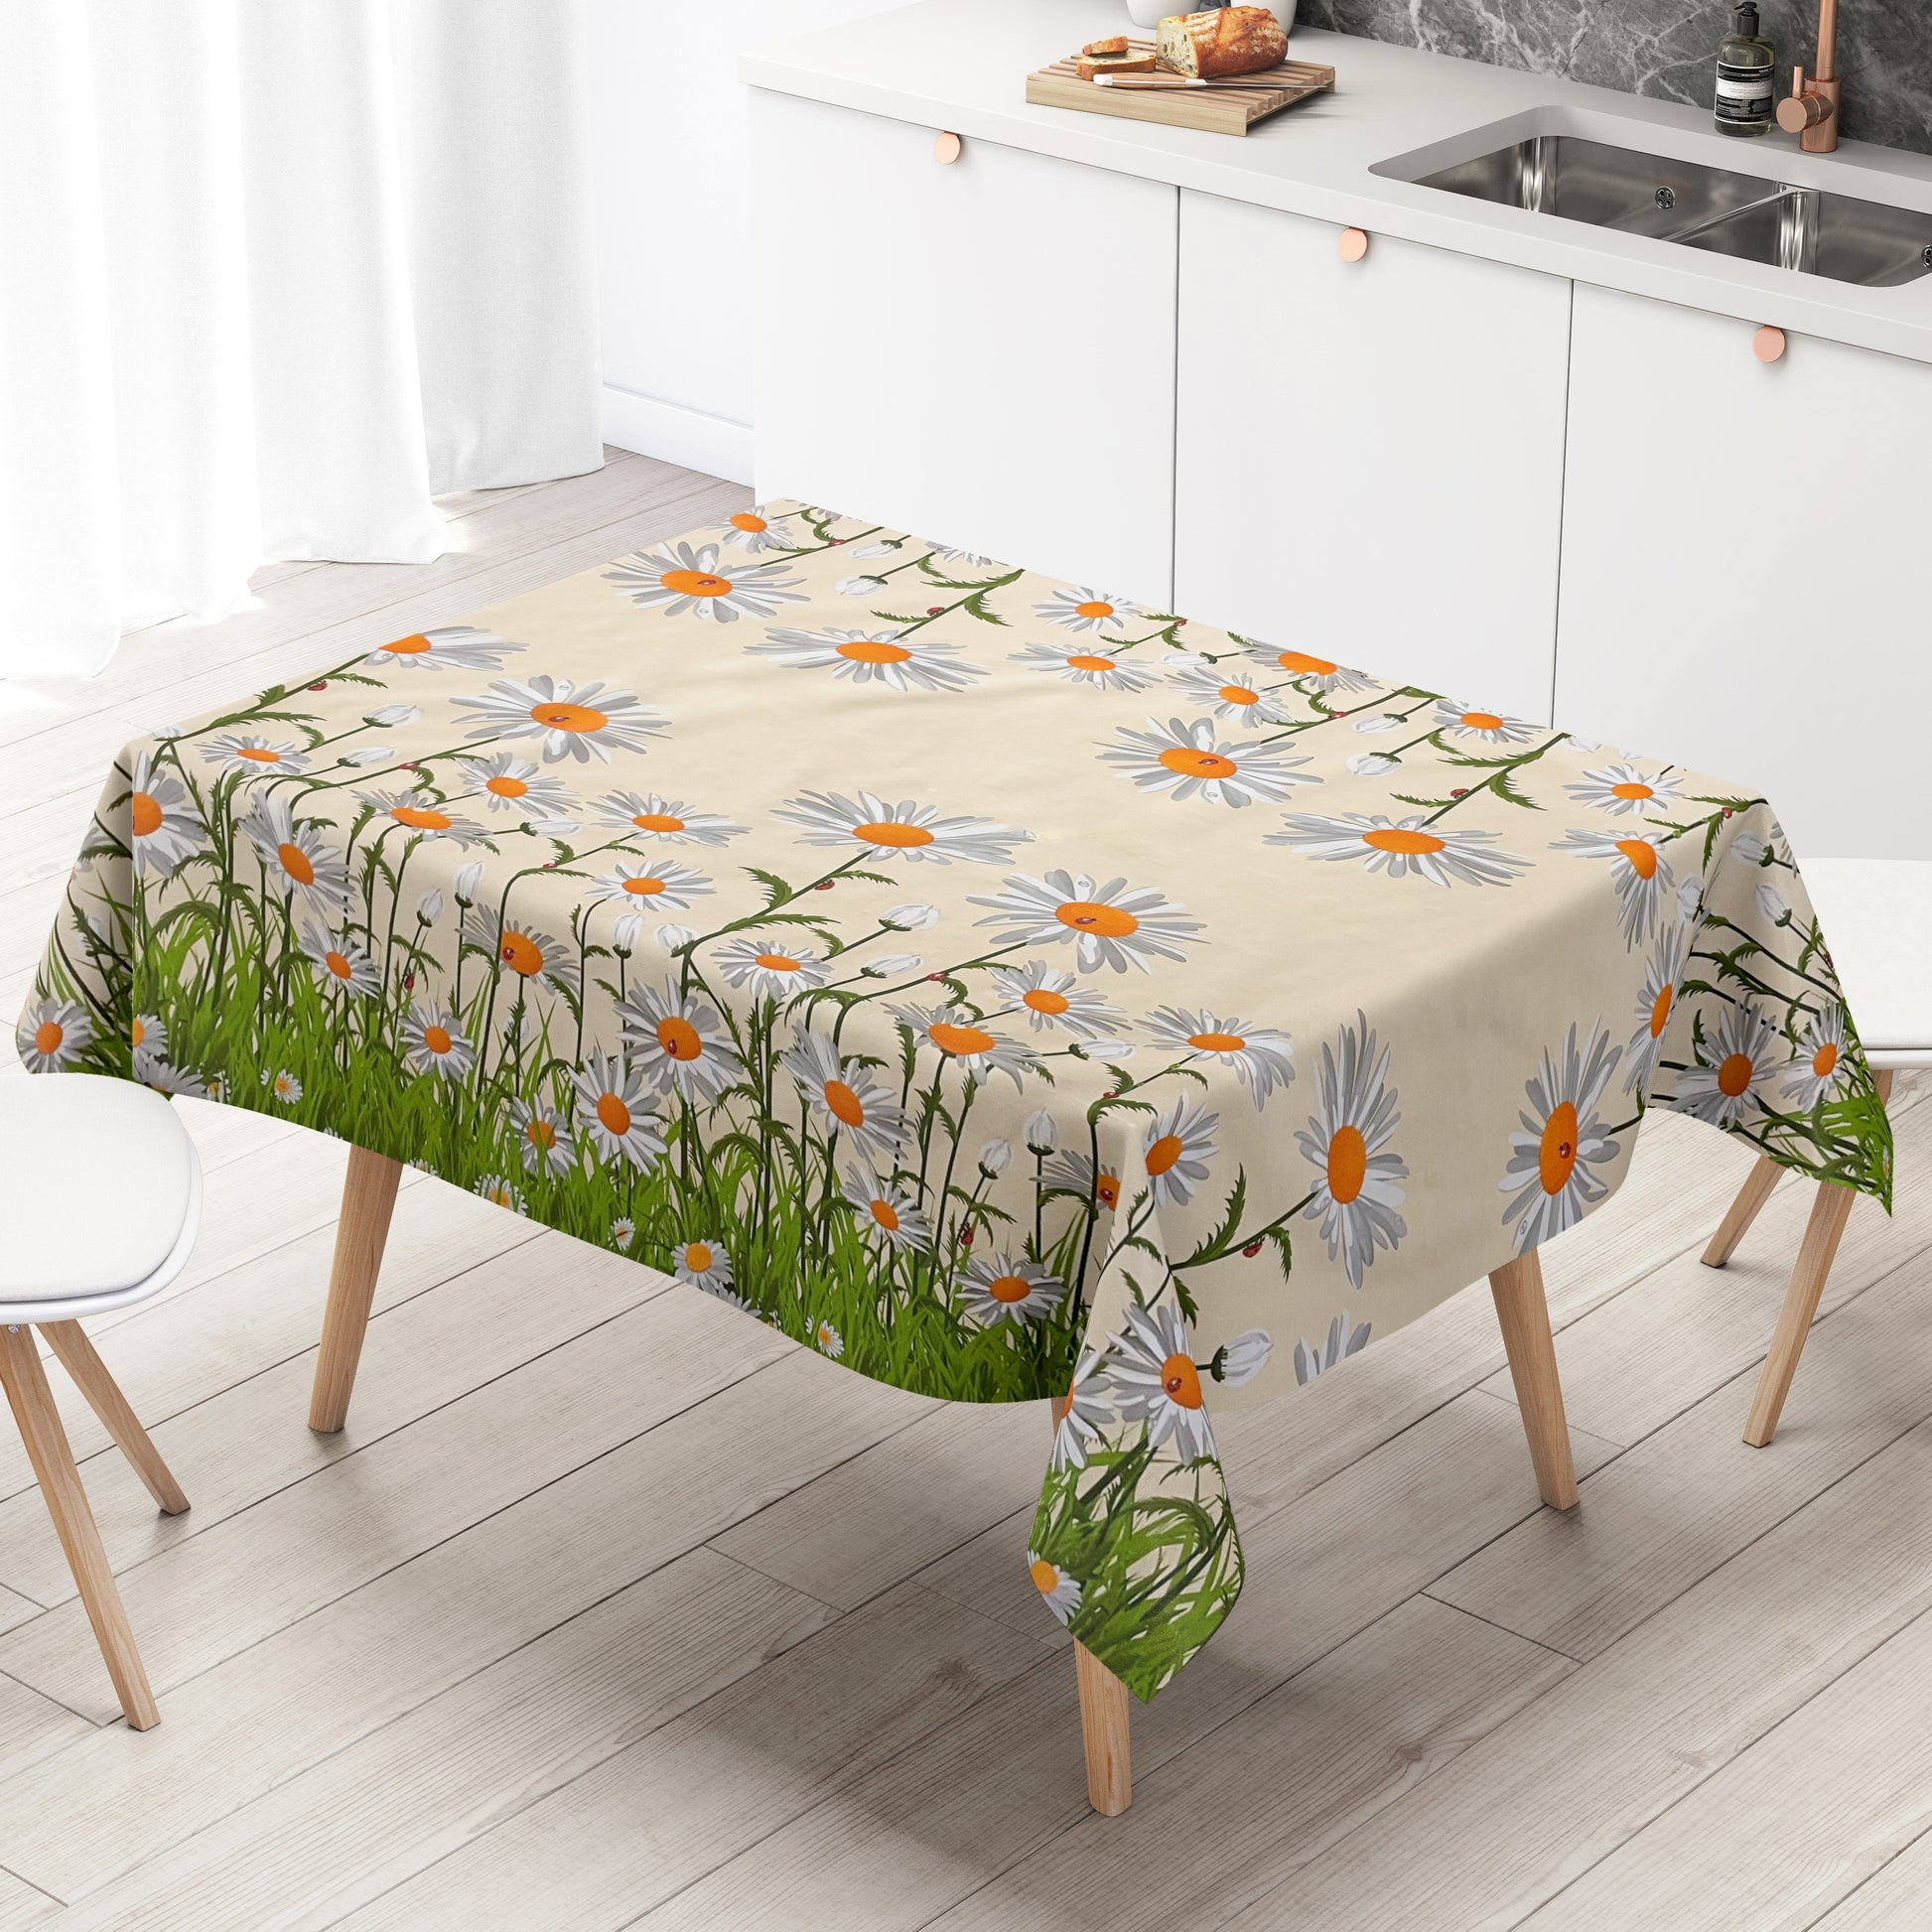 abwaschbare Wachstuch Tischdecke Bordürenmuster Gänseblümchen Blüten kevkus 